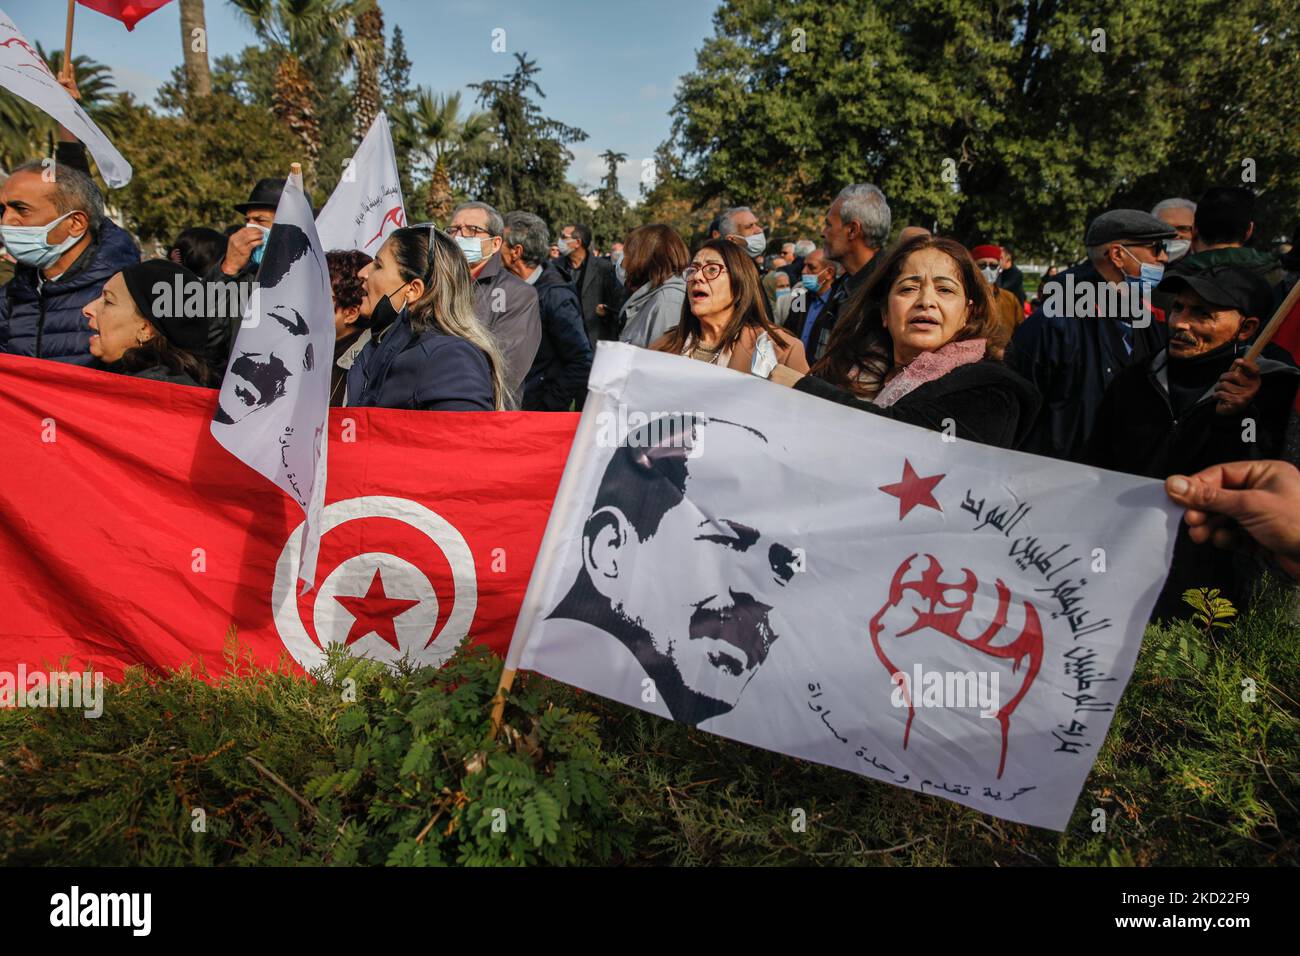 Los manifestantes gritan consignas junto a una bandera de Túnez durante una manifestación realizada con ocasión del 9th aniversario del asesinato del líder de izquierda Chokri Belaid en Túnez, Túnez, el 6 de febrero de 2022. Exigir rendición de cuentas en el caso de Chokri Belaid y la verdad sobre los asesinatos políticos, así como sobre el aparato secreto del partido de inspiración islamista Ennahda. (Foto de Chedly Ben Ibrahim/NurPhoto) Foto de stock